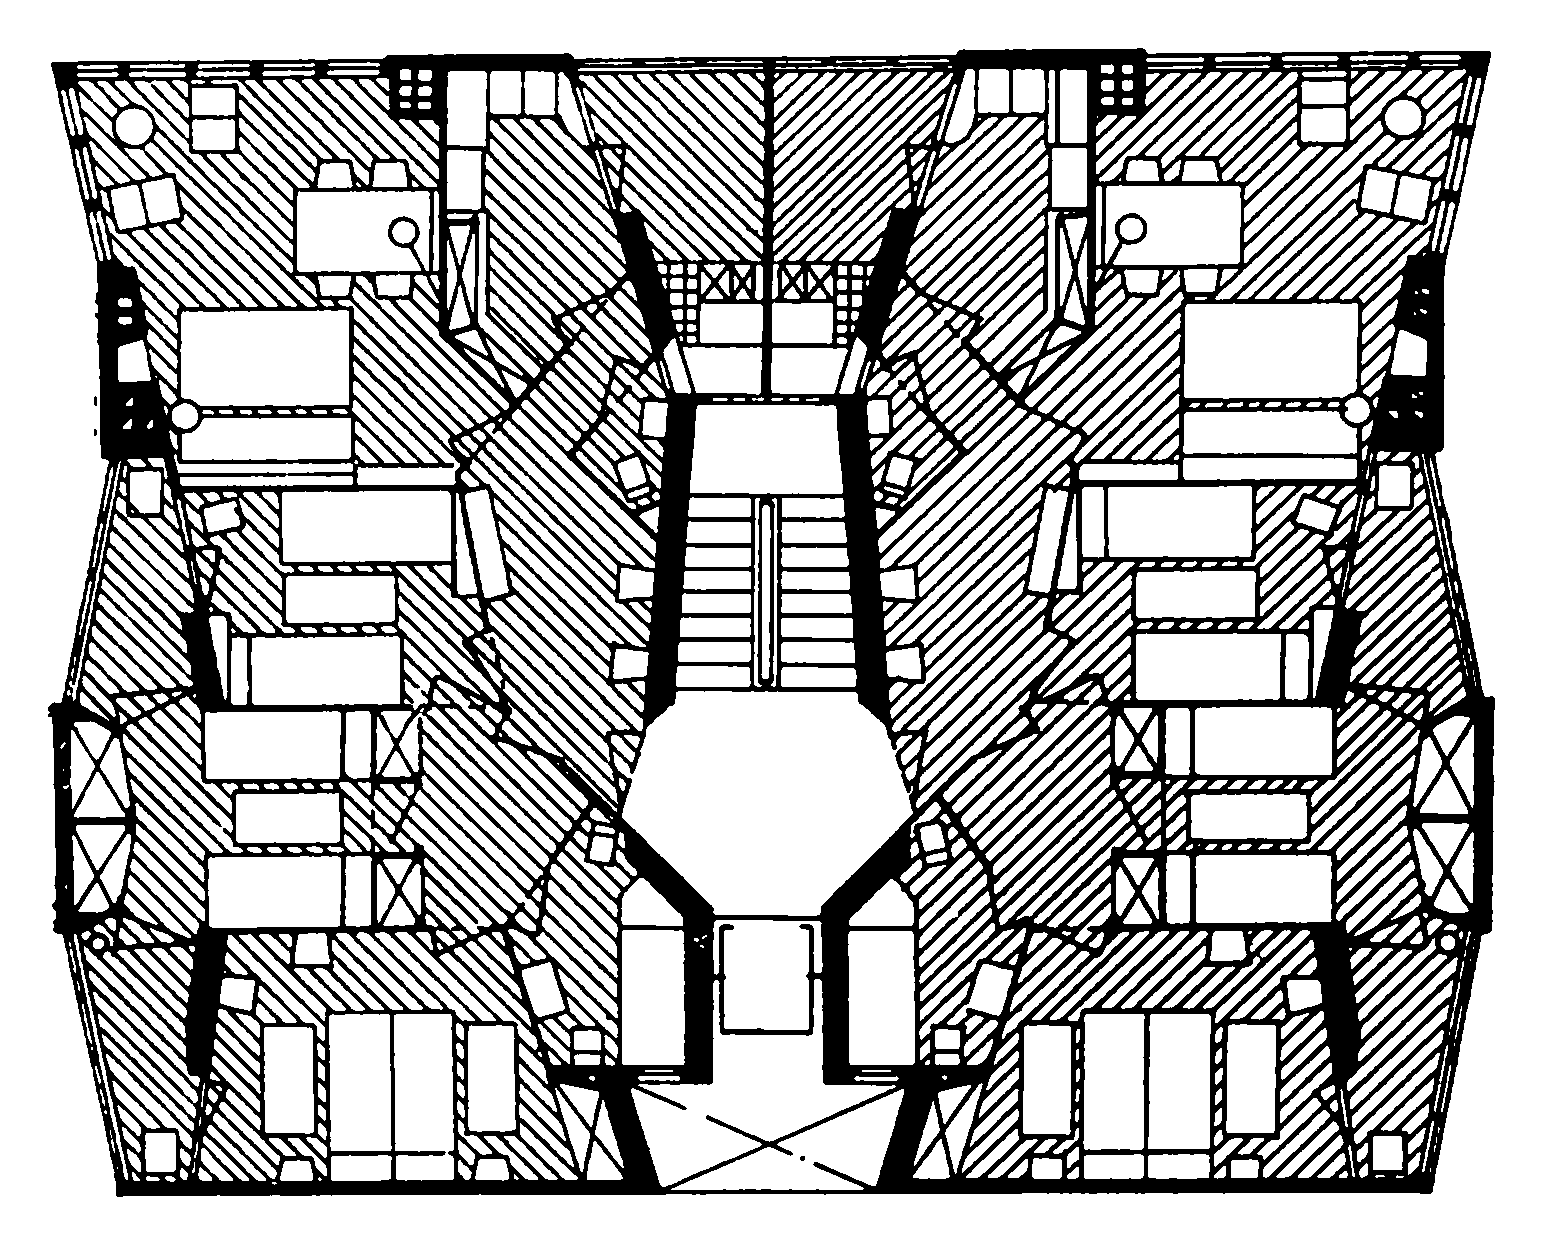 Барселона. Дом для служащих торгового флота, 1952—1955 гг. Архитекторы X. Кодерч и М. Вальс